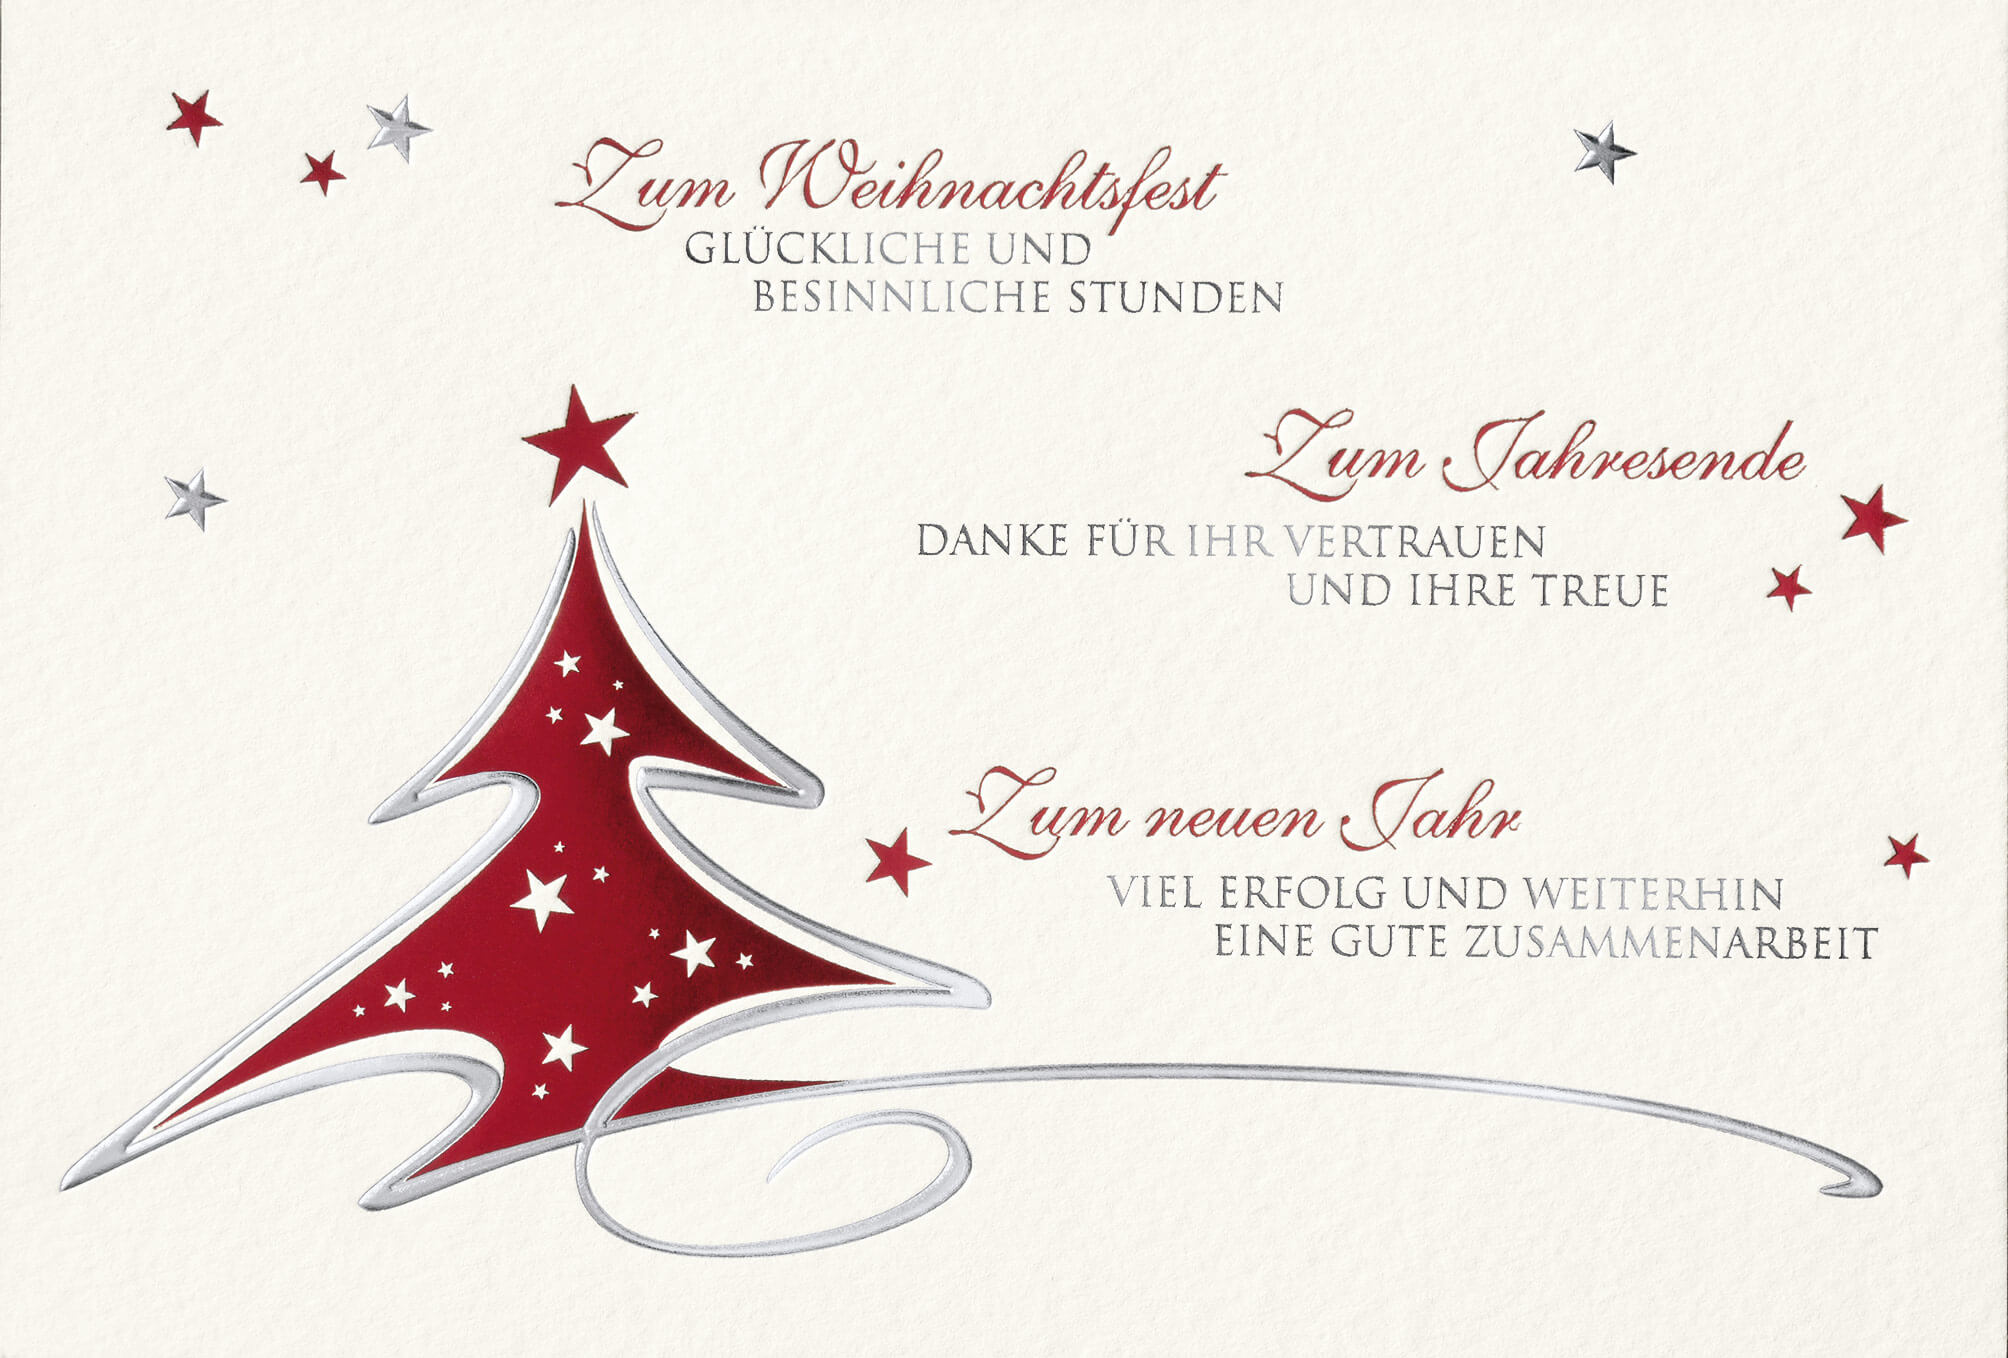 Firmenweihnachtskarte in weiß mit Tannenbaum und geschäftlichen Grüßen